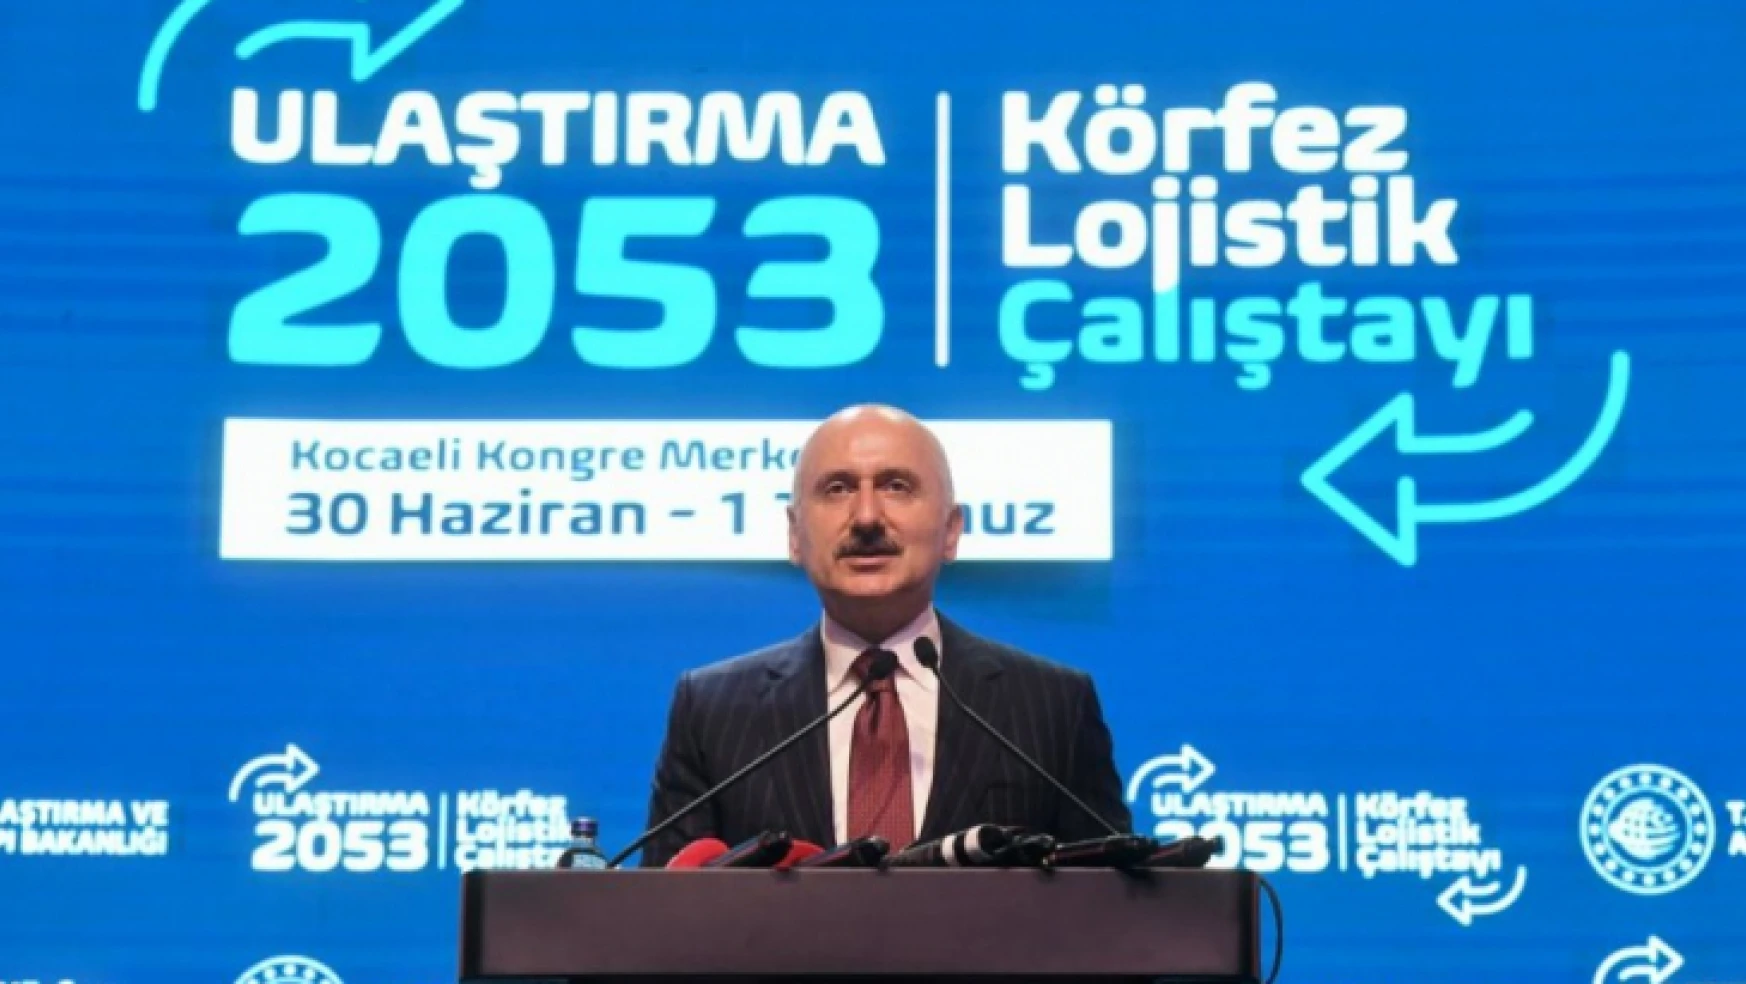 Ulaştırma ve Altyapı Bakanı Adil Karaismailoğlu denizcilik istatistikleriyle ilgili yazılı açıklama yaptı.